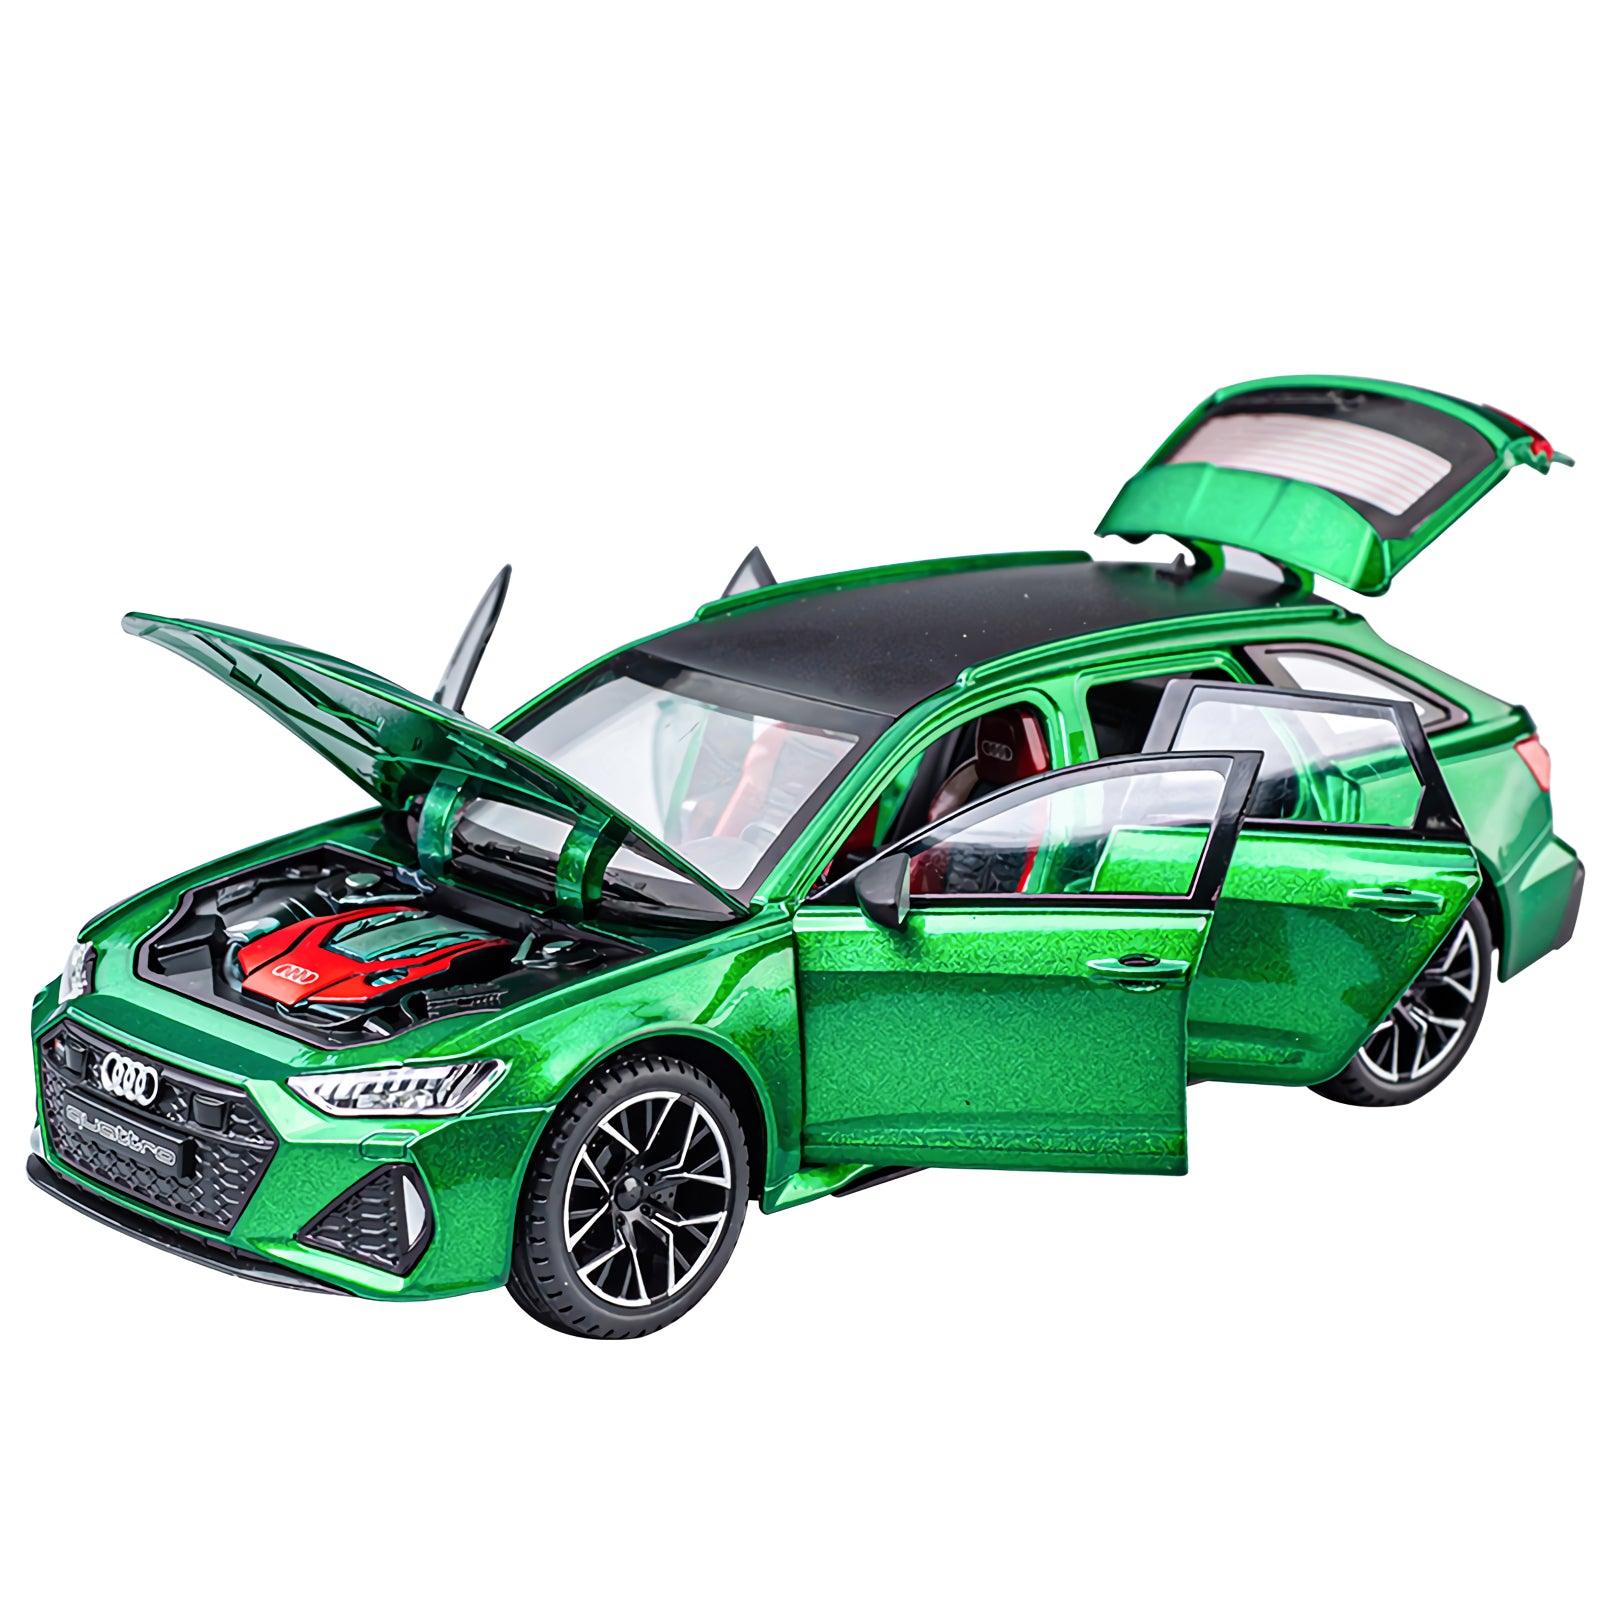 Audi RS6 1:24 Scale Die-Cast Model Car - Precision Craftsmanship - PANSEKtoy